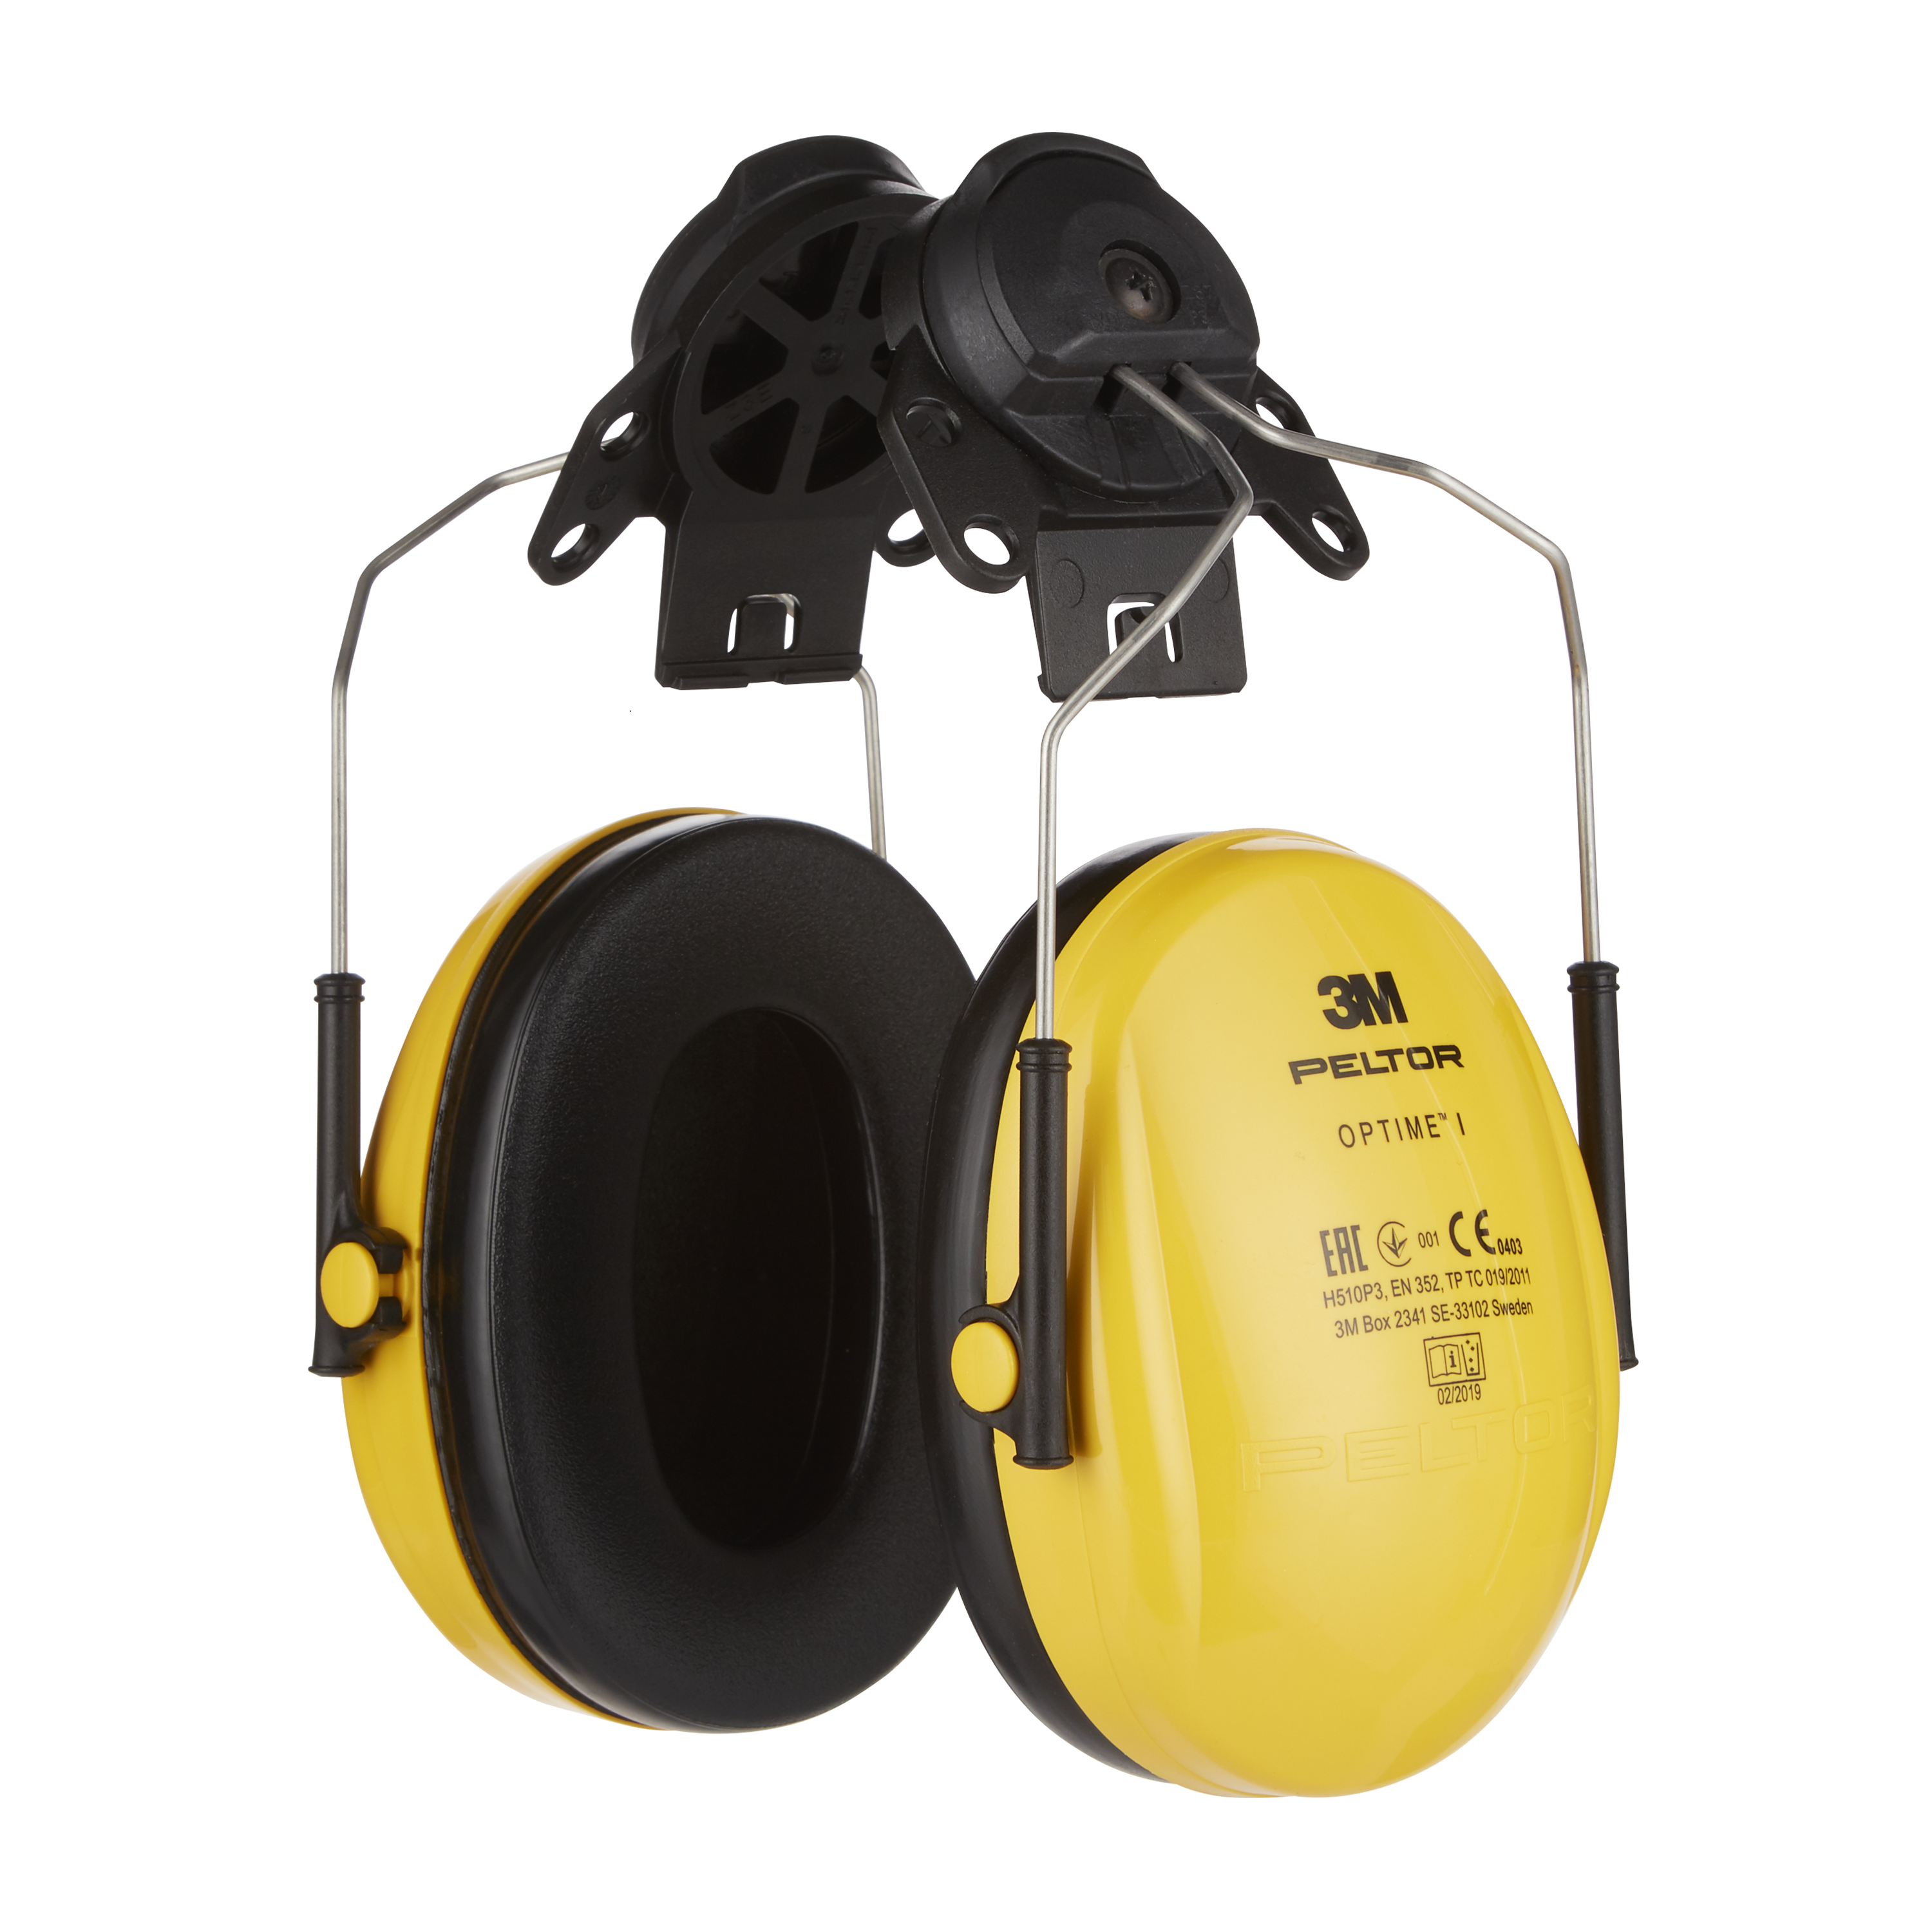 3M Peltor - Komfort Kapselgehörschutz für Helm, Optime I, H510P3, gelb, SNR  = 26 dB | günstig kaufen